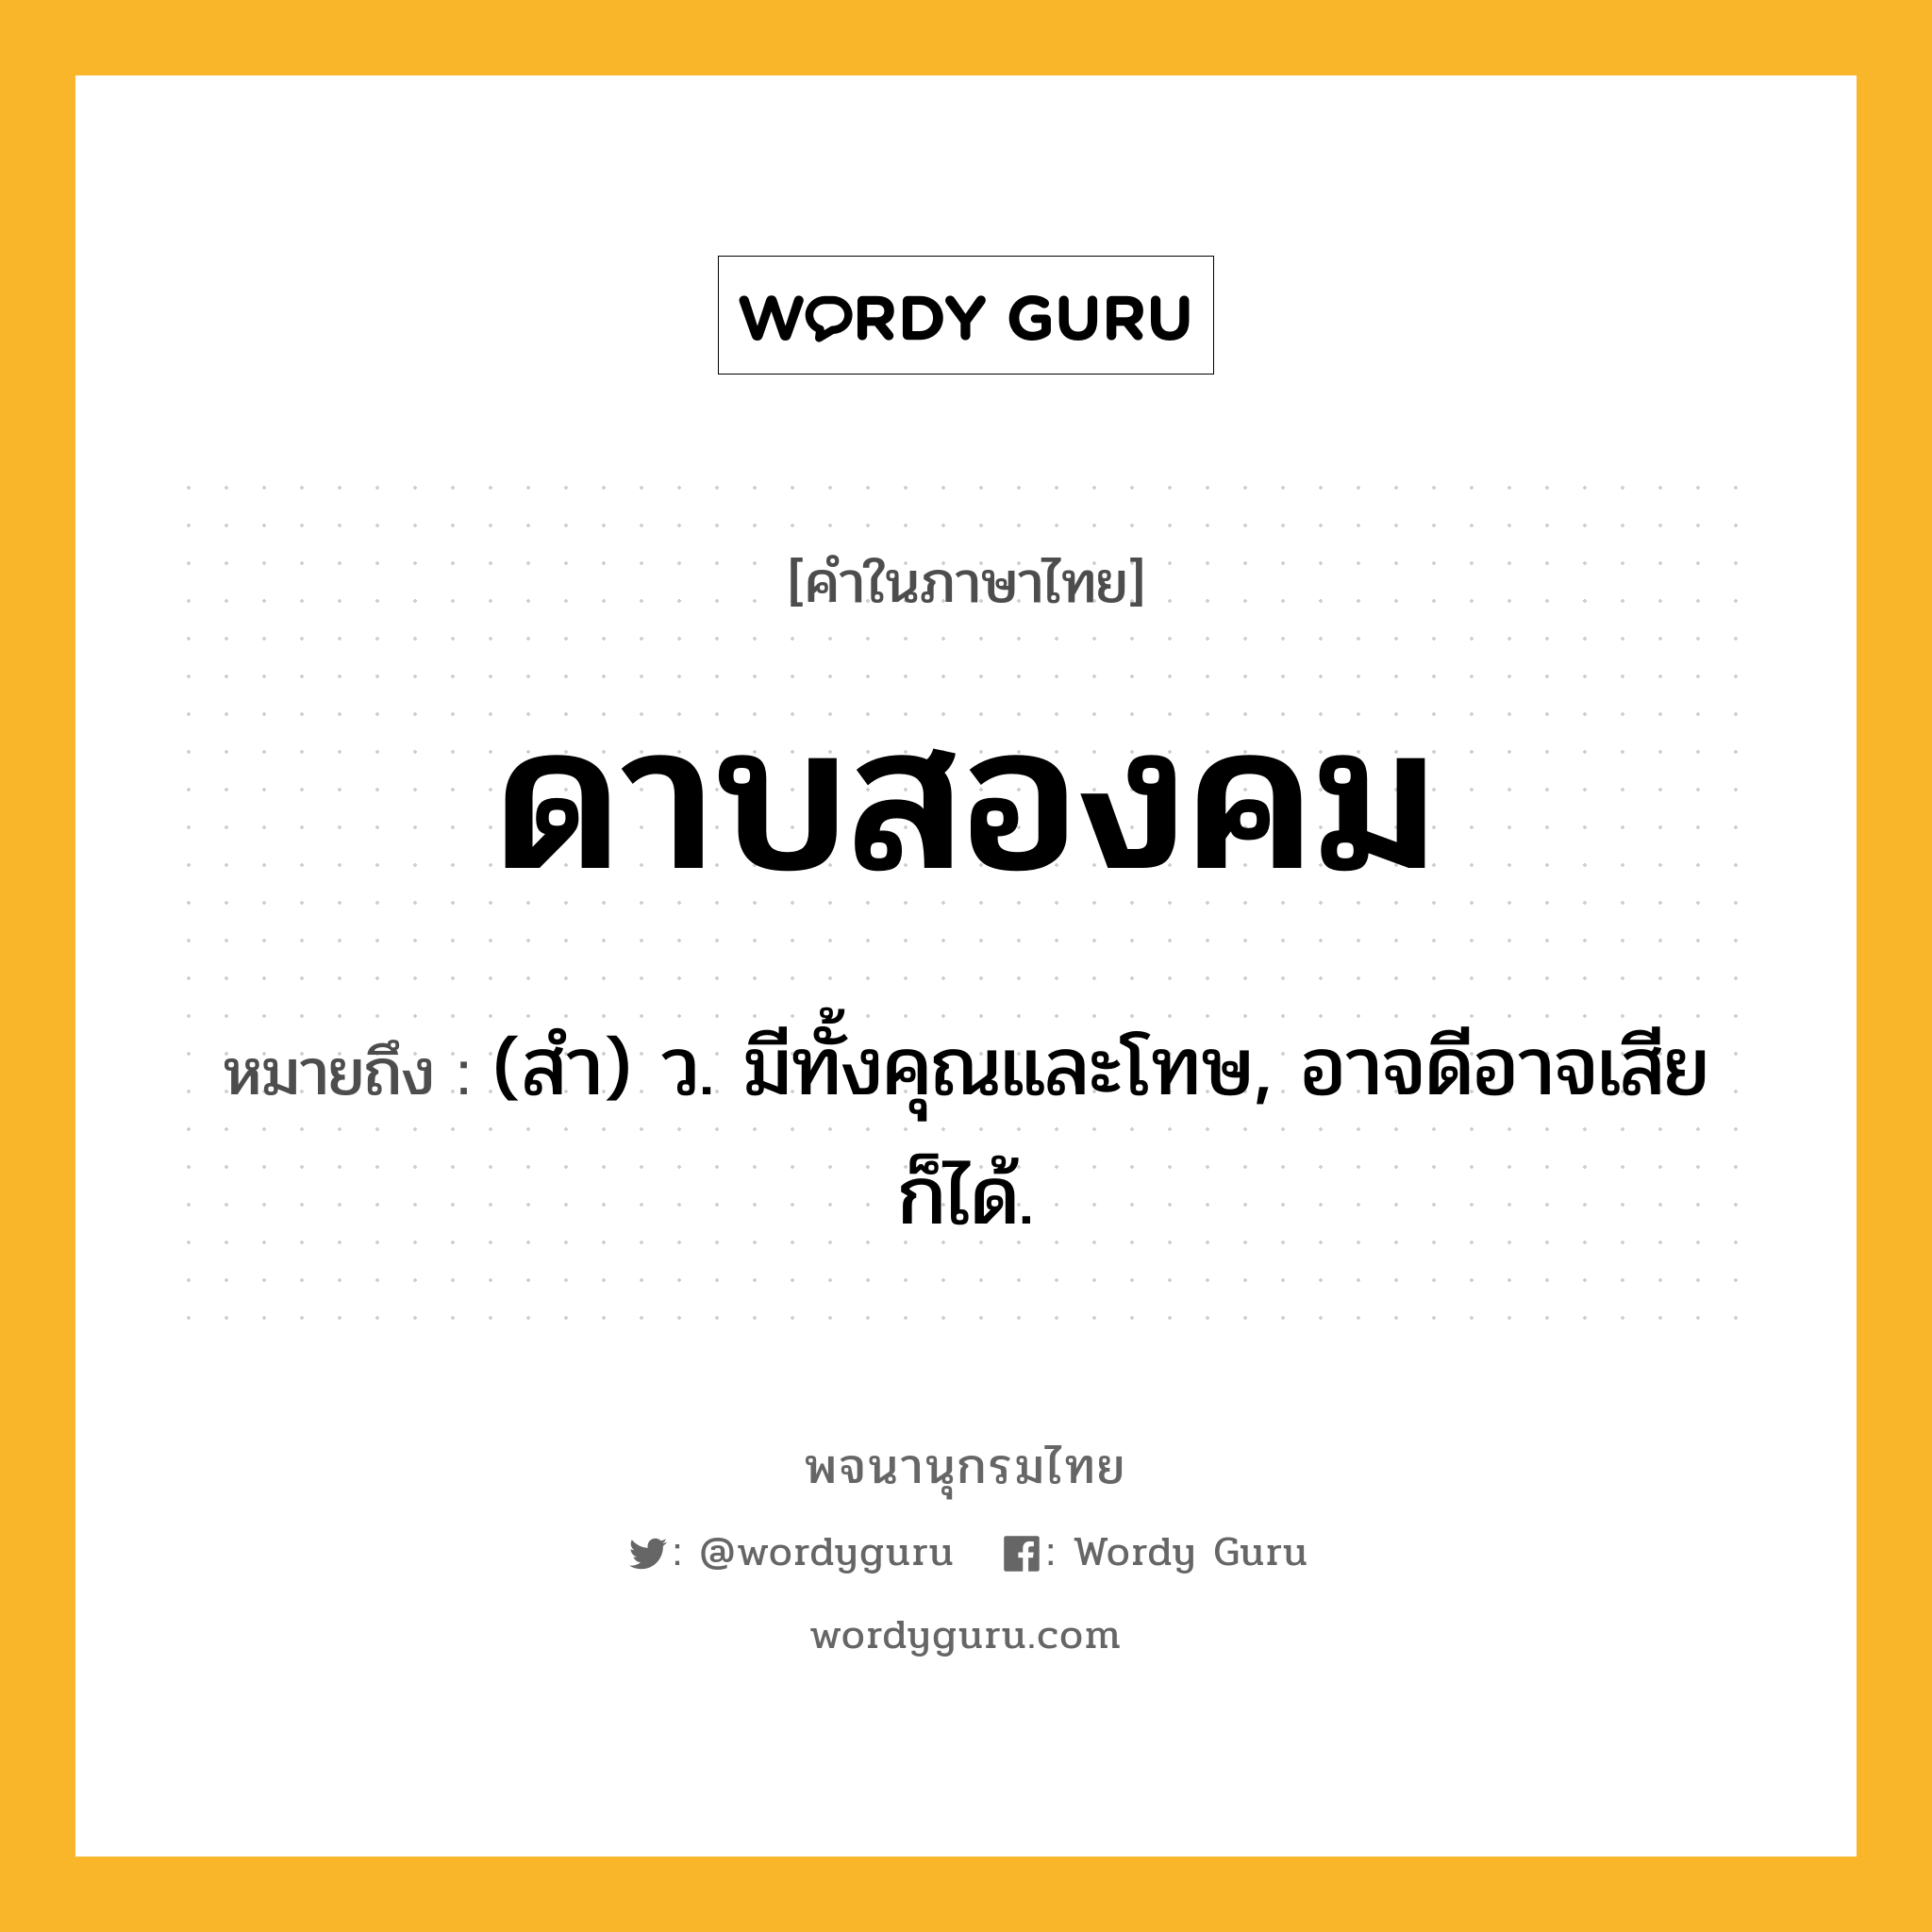 ดาบสองคม หมายถึงอะไร?, คำในภาษาไทย ดาบสองคม หมายถึง (สํา) ว. มีทั้งคุณและโทษ, อาจดีอาจเสียก็ได้.